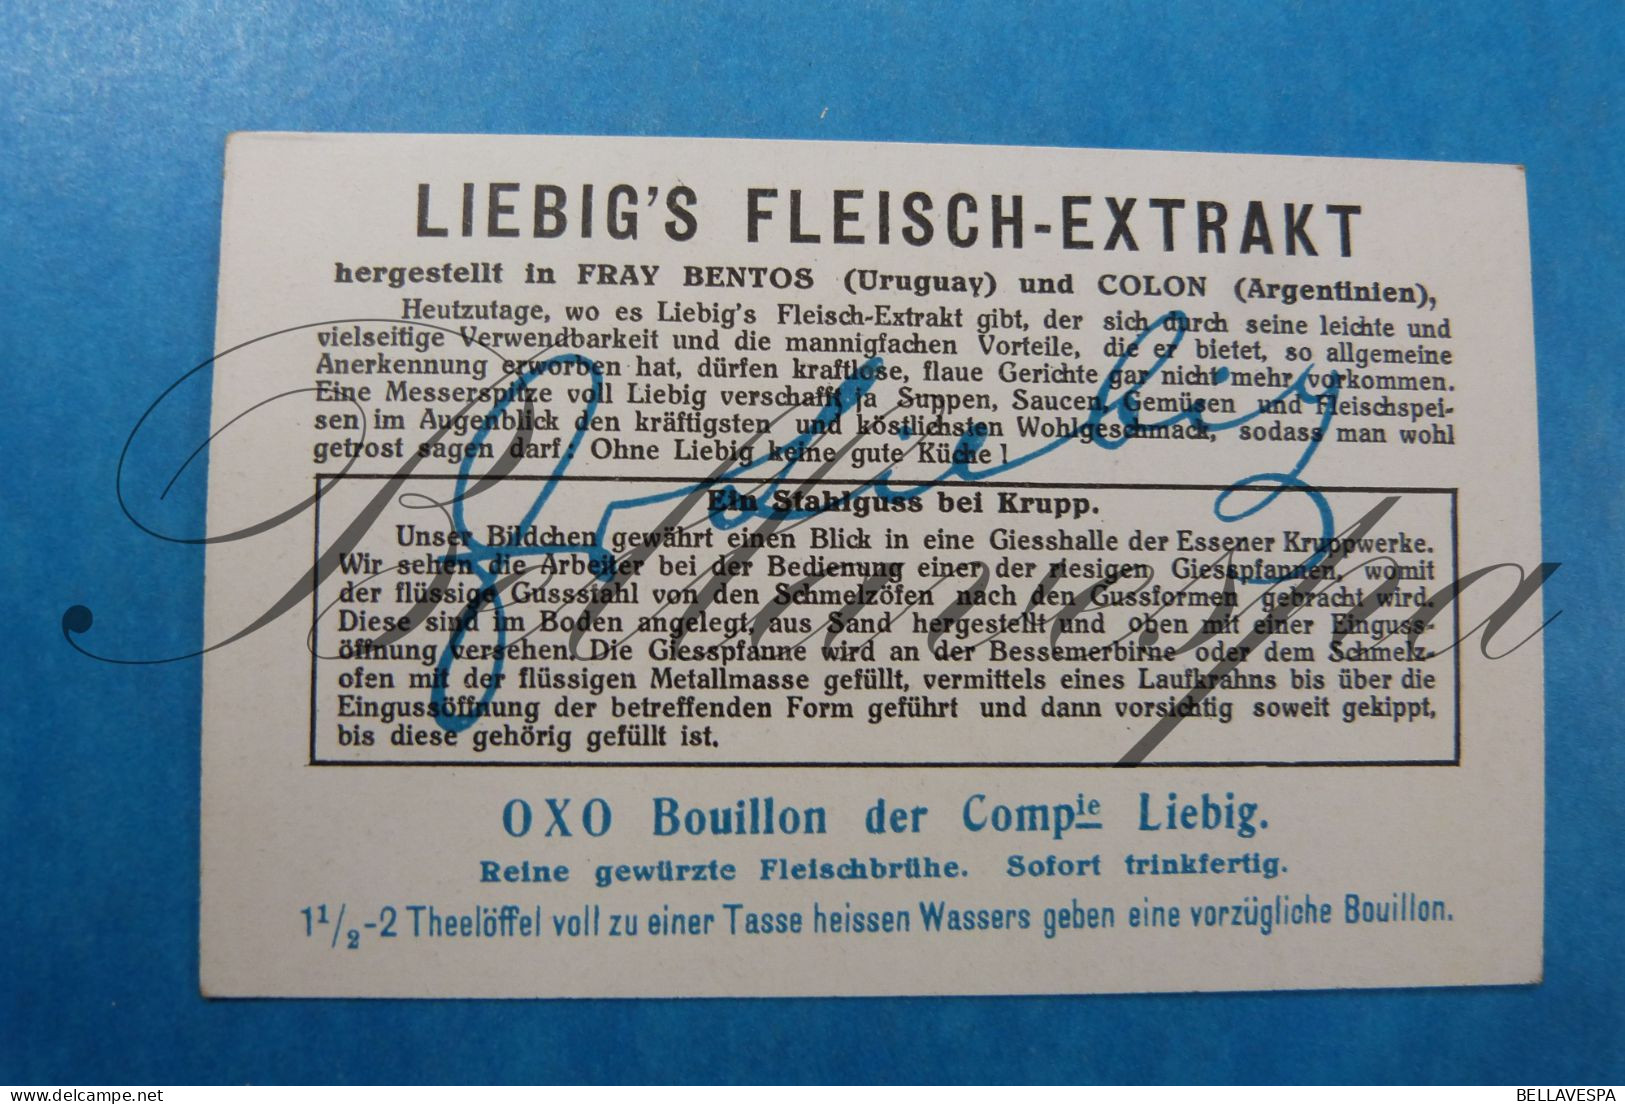 Liebig Germany n° 1117 Die entwickelung der giesskunst.lot x 6 pc ferro en Non-Ferro Gieterijen Ovens Raki Kroes.